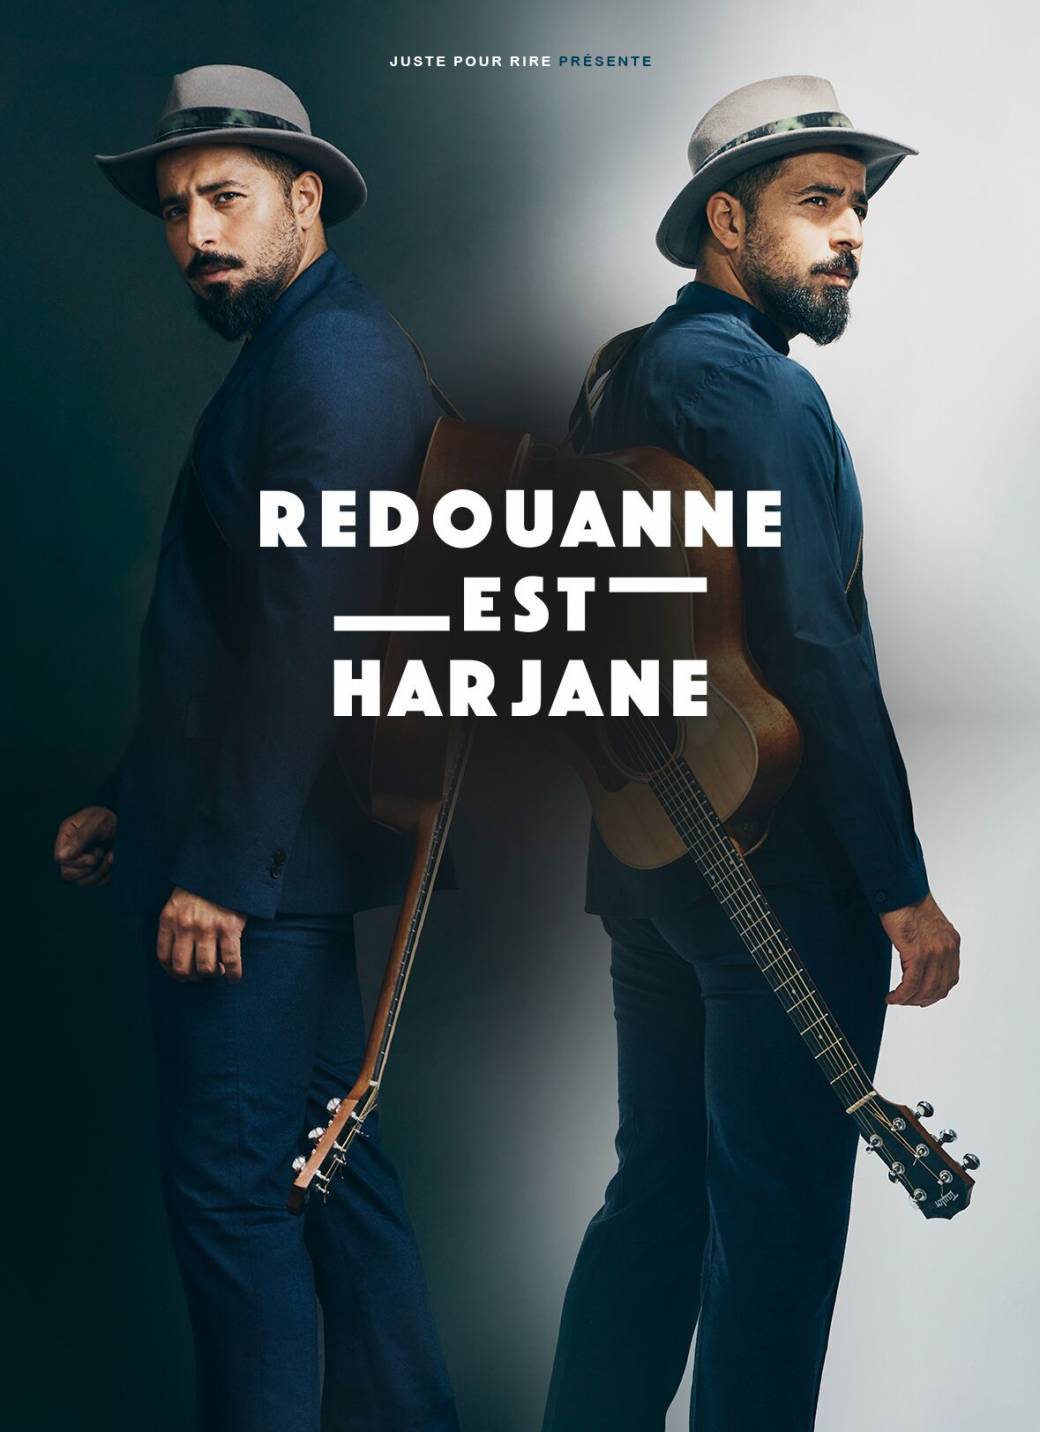 "Nouveau Spectacle" de Redouanne Harjane